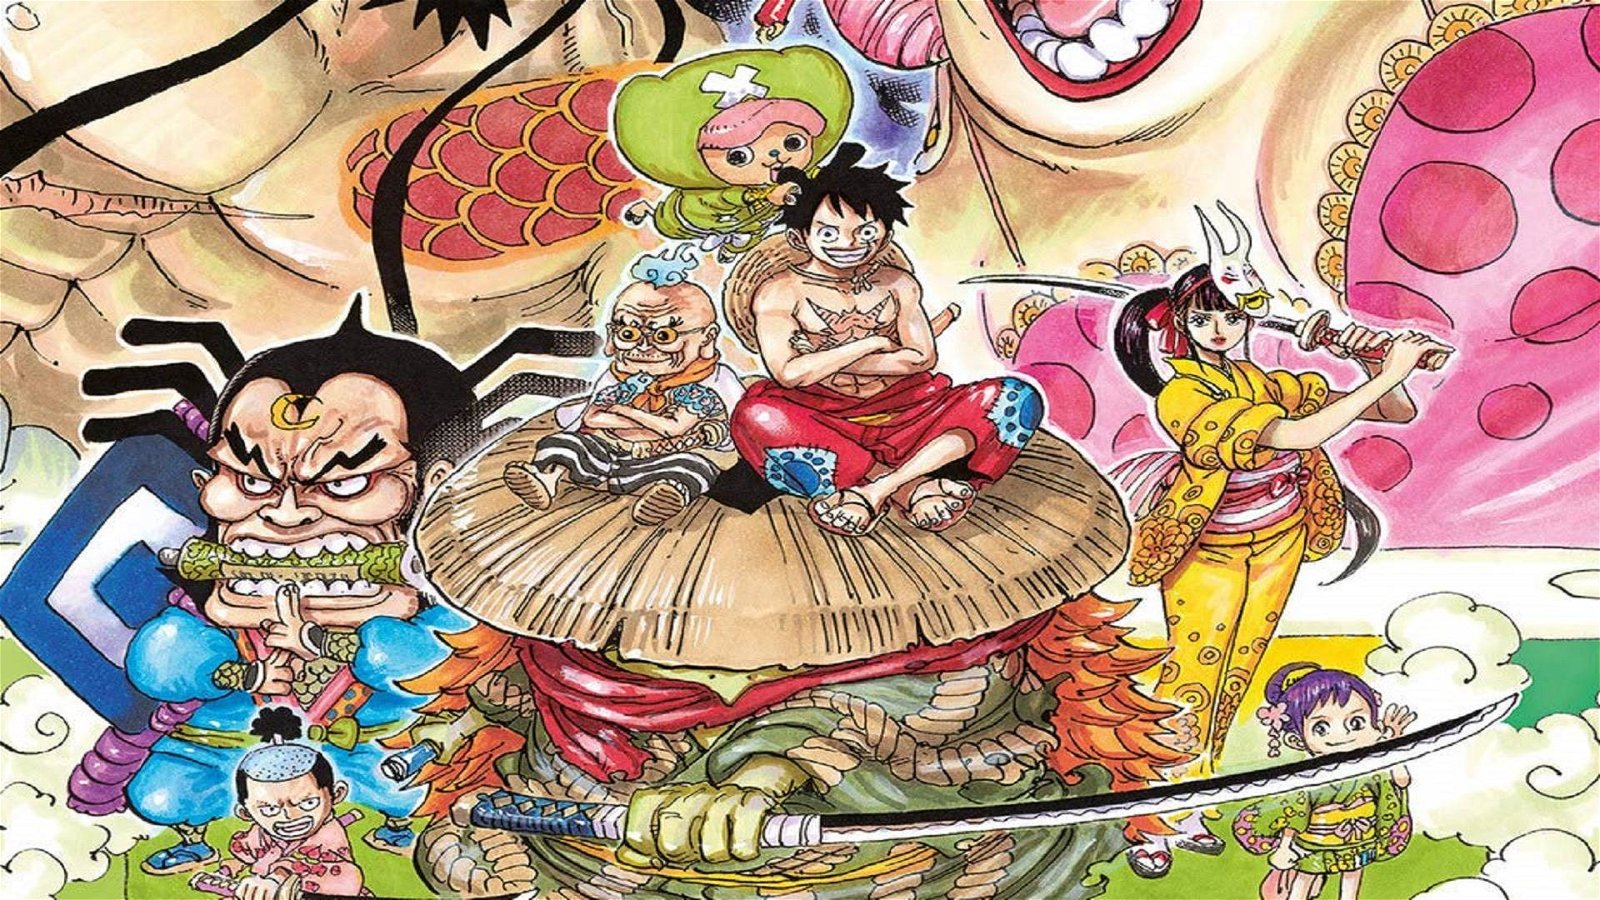 Immagine di One Piece 94 in uscita per Edizioni Star Comics